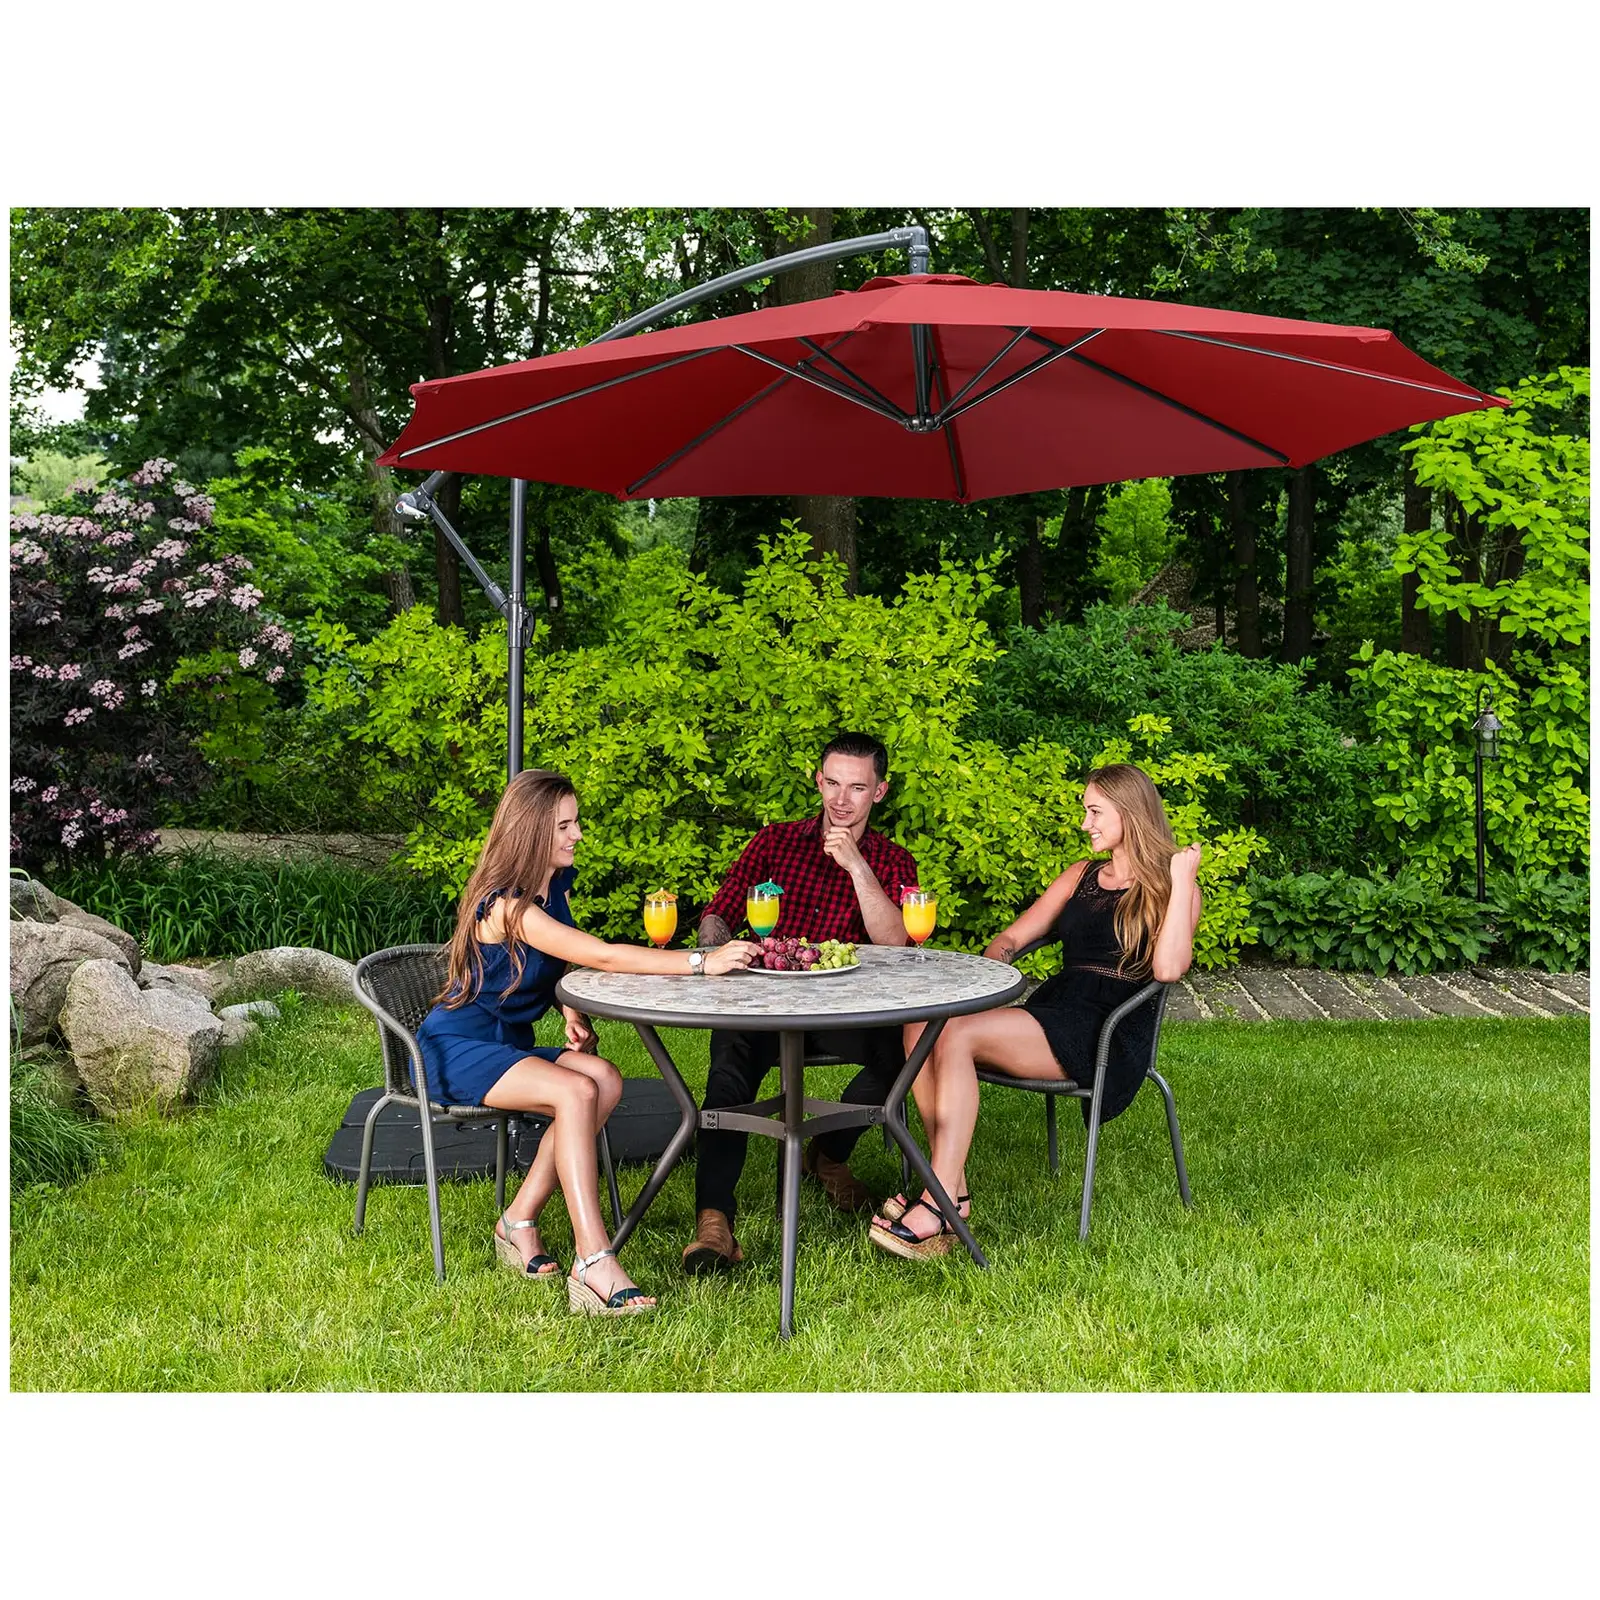 Garden umbrella - claret  - round - Ø 300 cm - tiltable